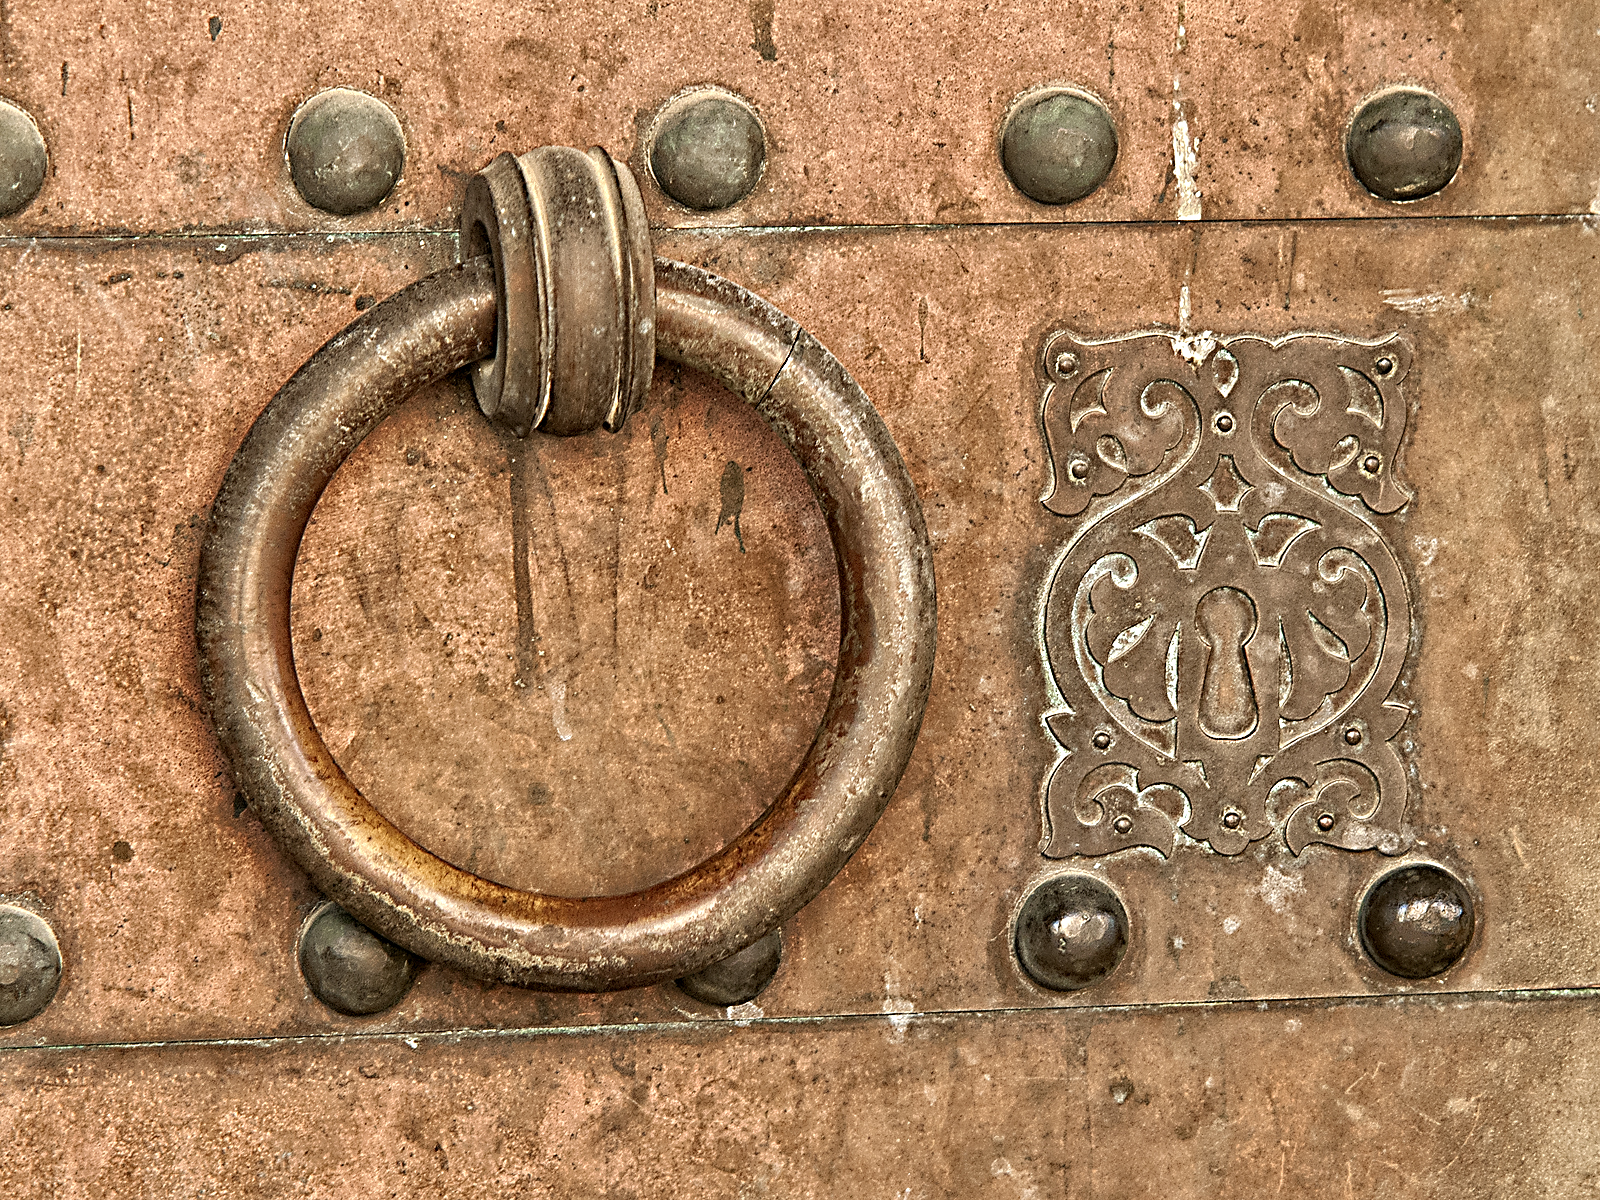 Detalle de una de las puertas de la mezquita. Foto cedida por Juan Sánchez Ortega - Sortega Fotografía